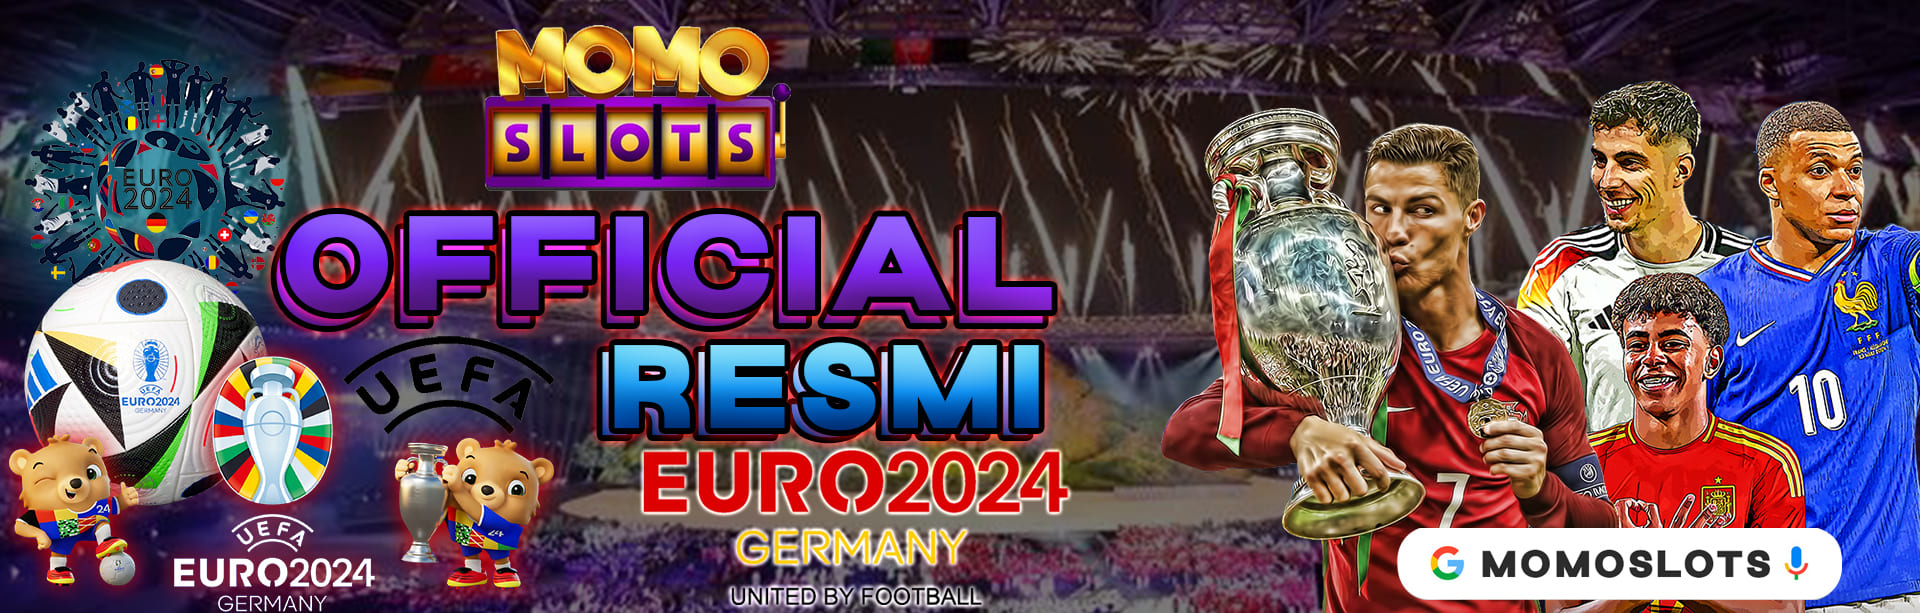 OFFICIAL EURO 2024